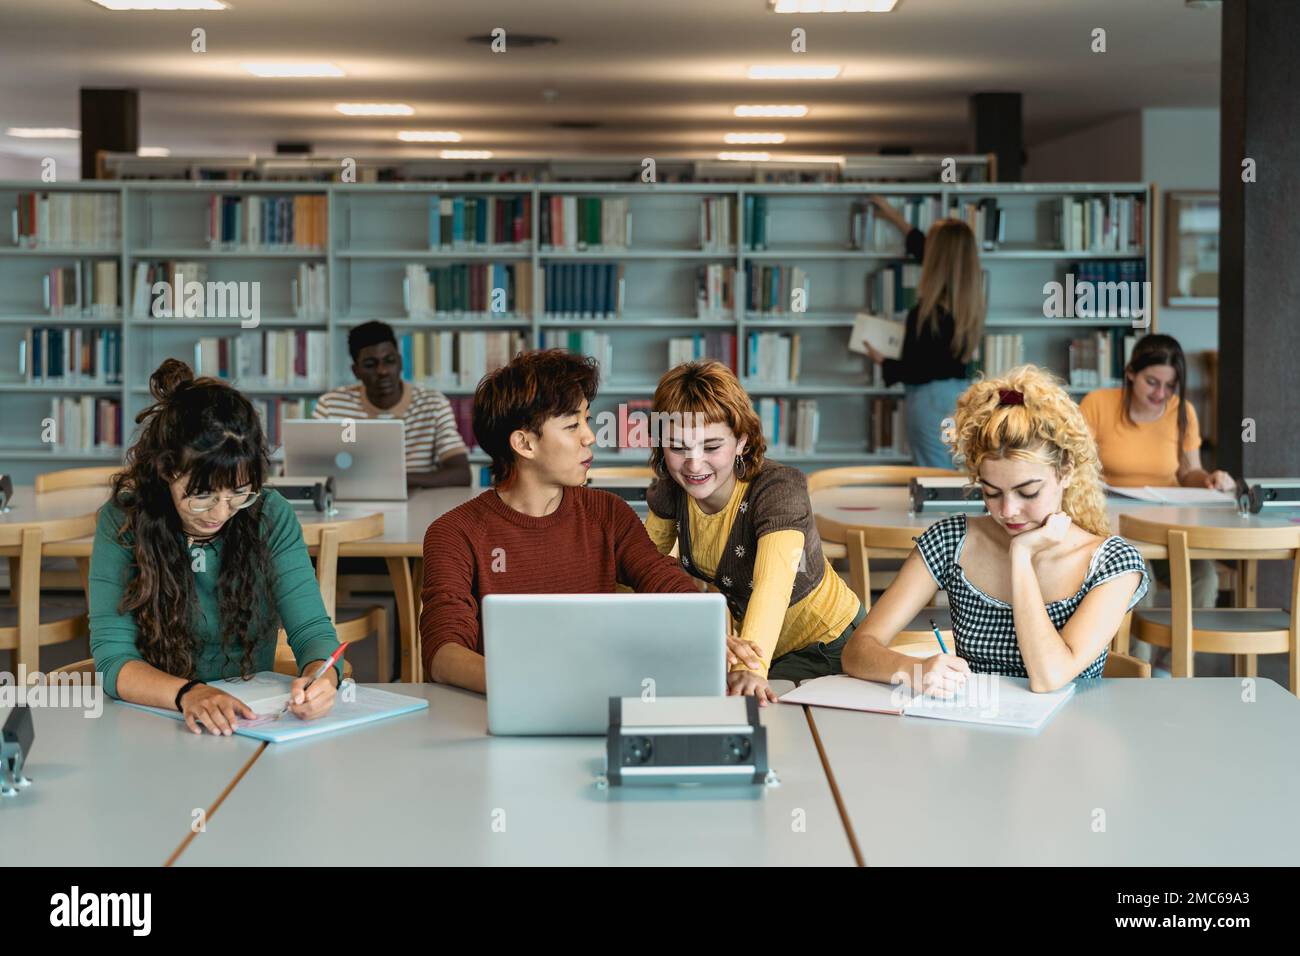 Giovani studenti universitari che usano il computer portatile e studiano con libri in biblioteca - concetto di educazione scolastica Foto Stock